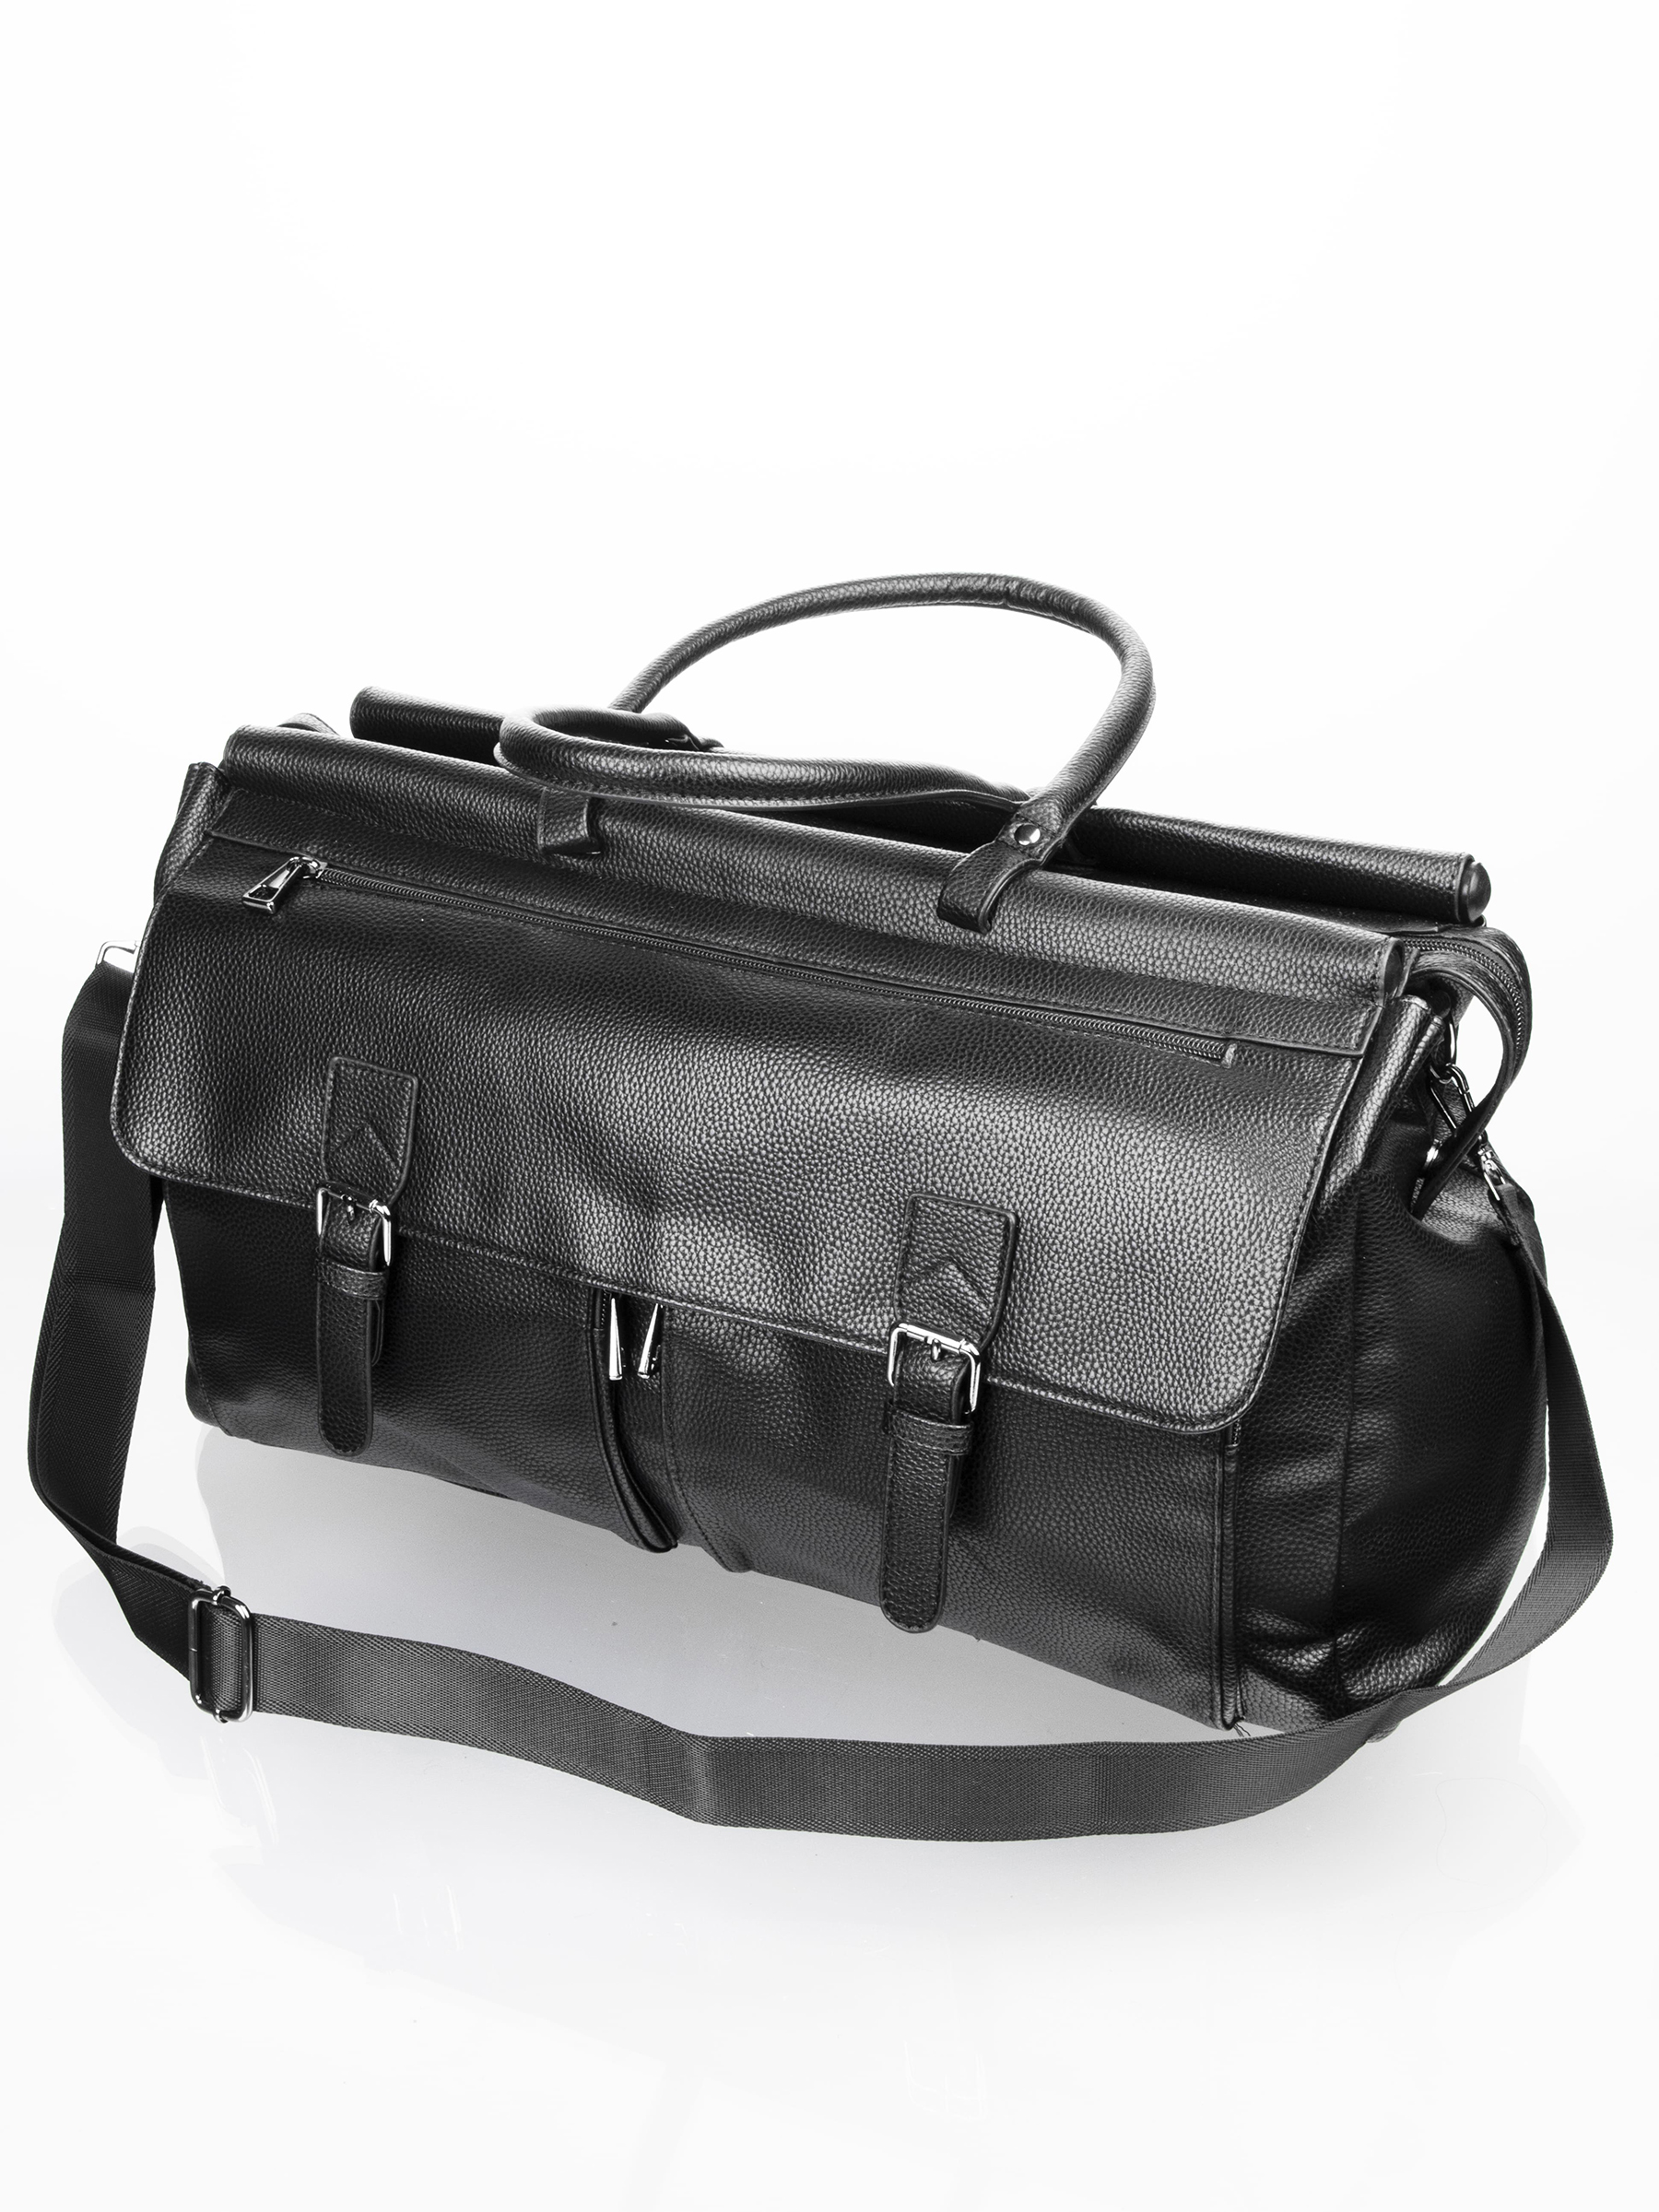 Дорожная сумка унисекс AV Bags Bag08 черная, 50х32х21 см